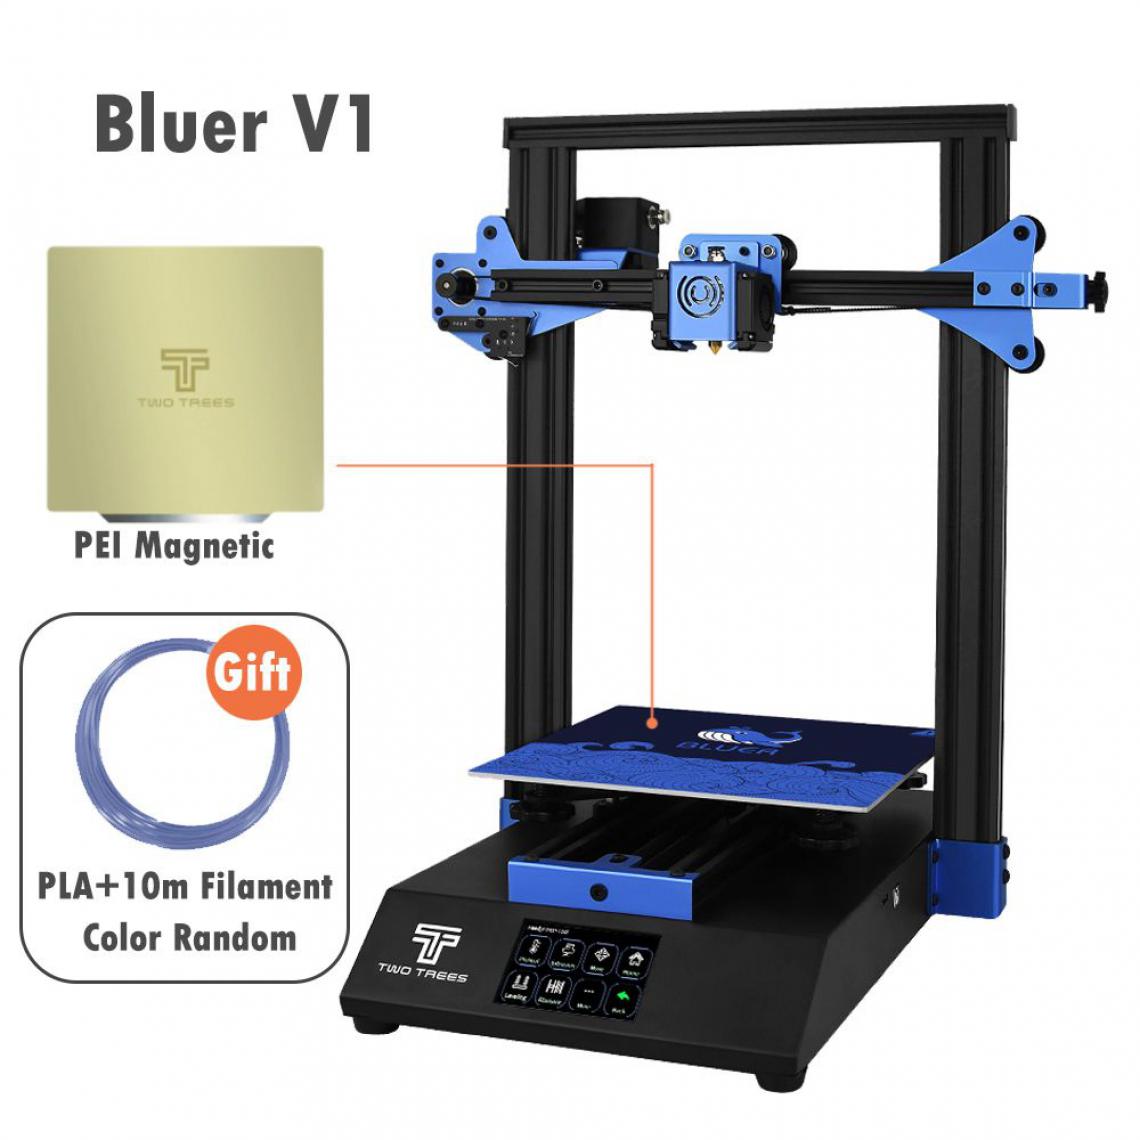 Generic - Imprimante 3D Bluer V2, avec Pilote Silencieux et Écran Tactile Couleur TFT de Grande Taille, Convient pour Filament  PLA, ABS, PETG,Wood  41 *40 * 52 cm - Noir  - Imprimante 3D